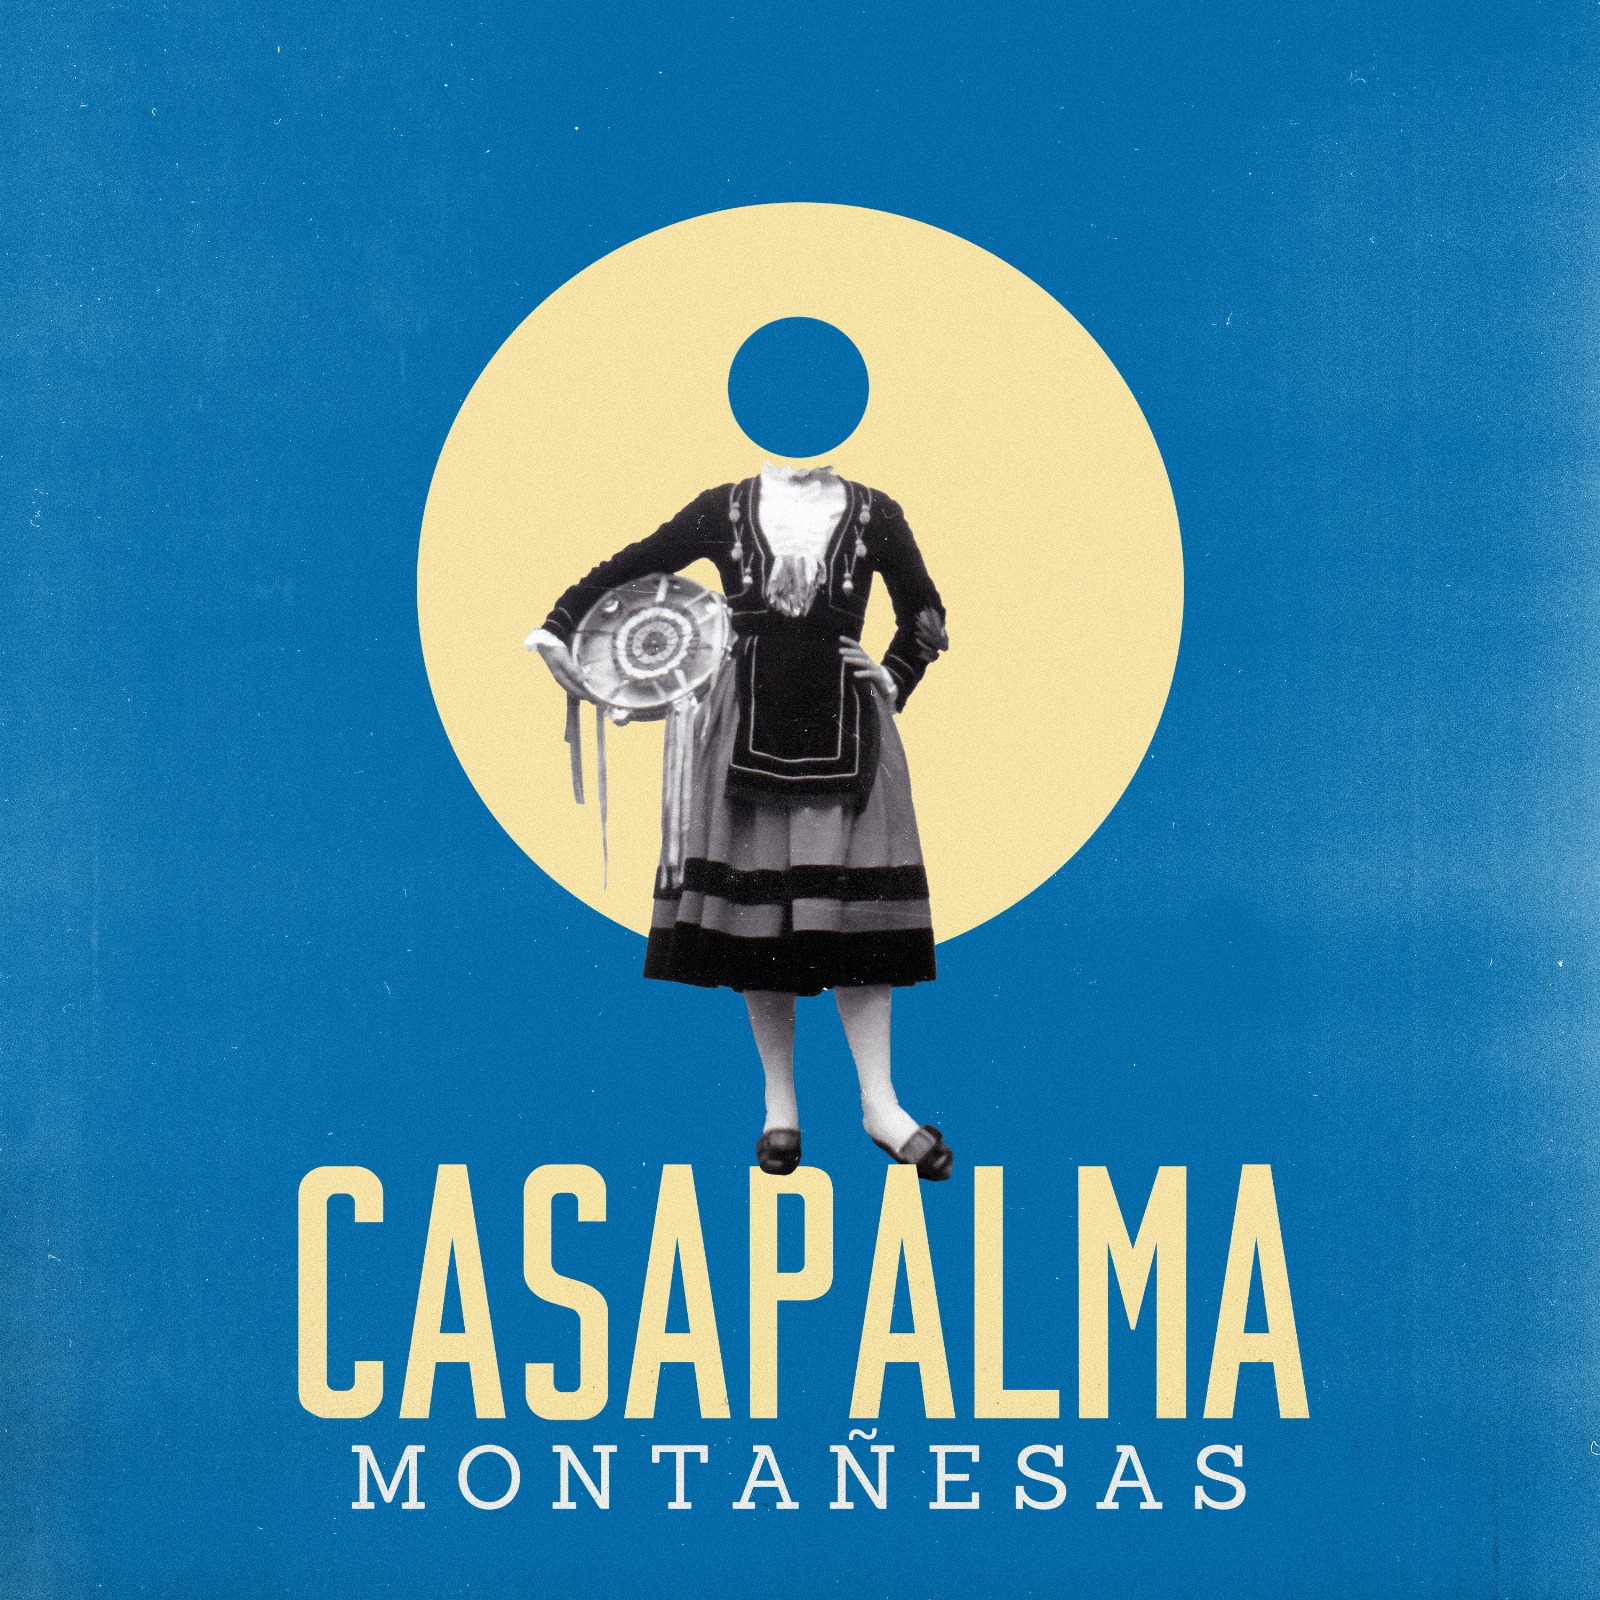 CASAPALMA_Montañesas_COVER.jpg